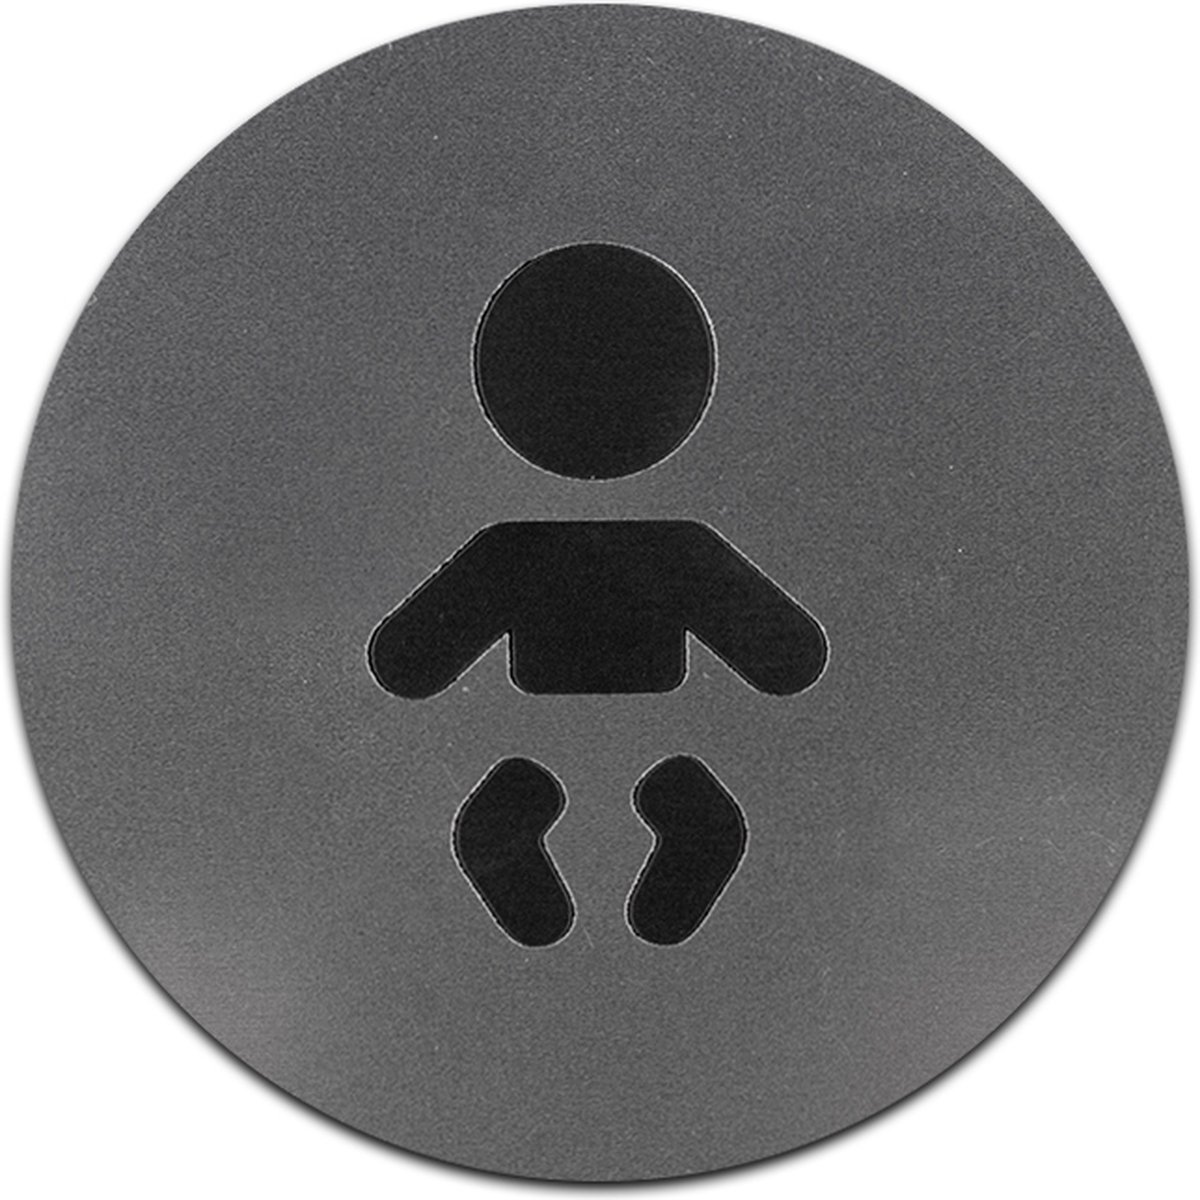 Wc bordje – Baby Verschoonplaats – Rond – RVS met Zwart – 10 x 10 cm - Toilet bordje – Deurbord – Zelfklevend